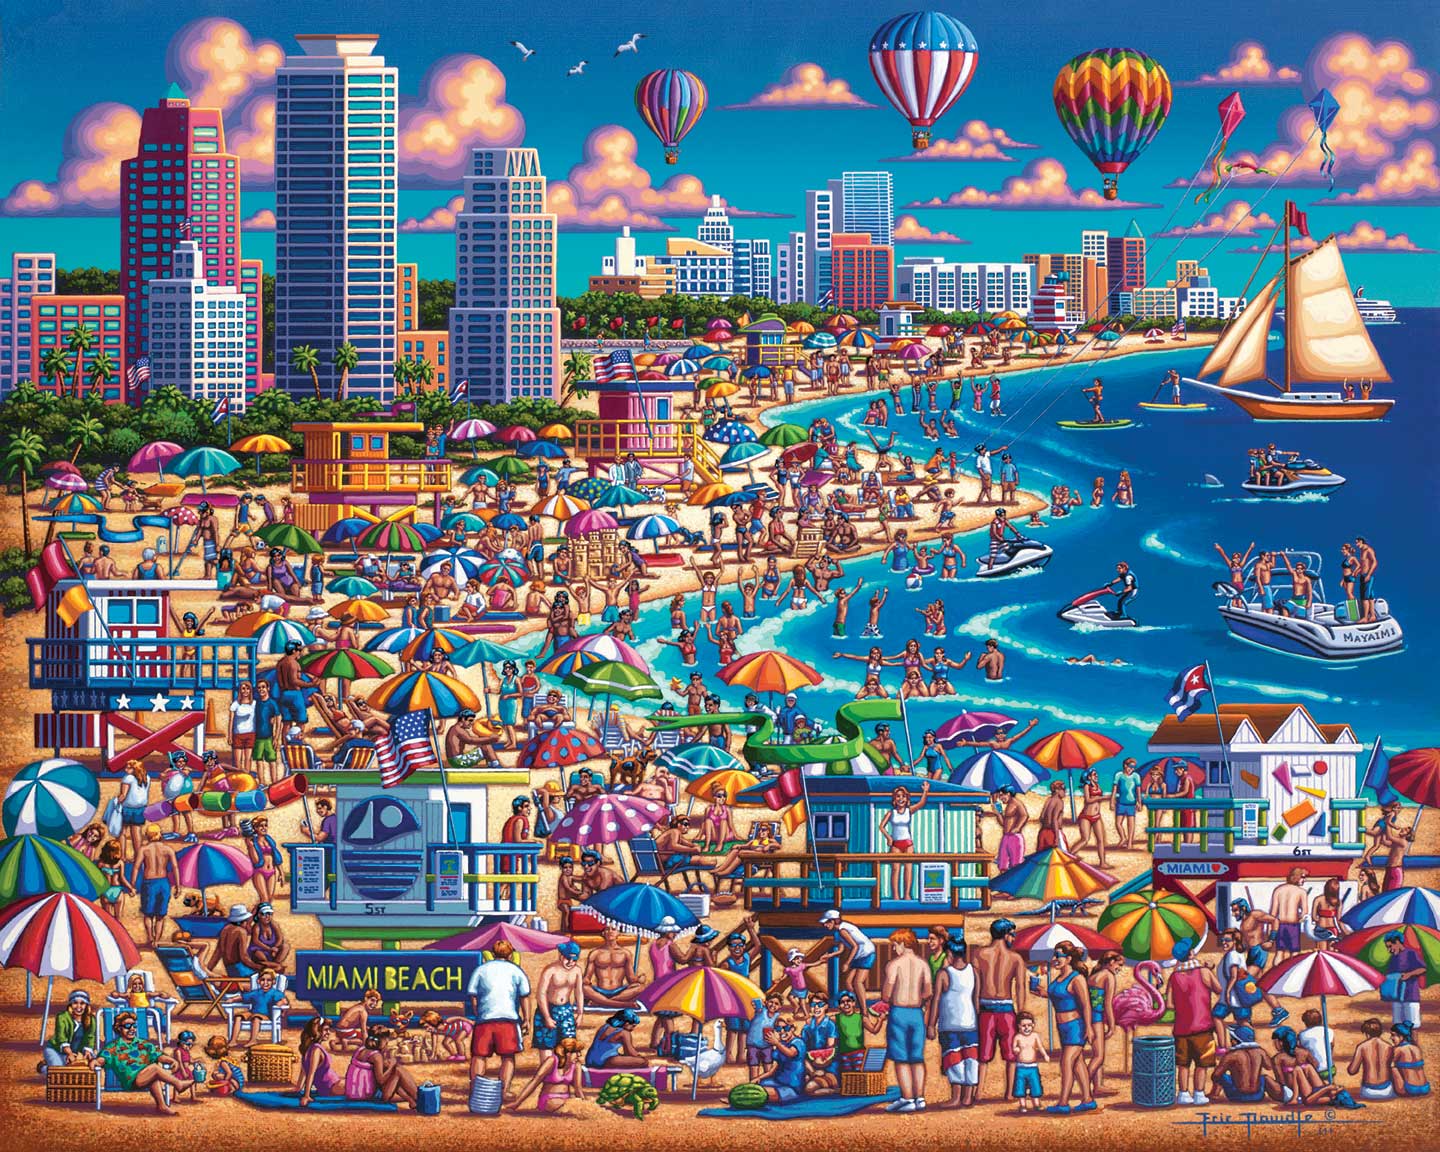 Dowdle Jigsaw Puzzle - Miami Beach - 500 Piece